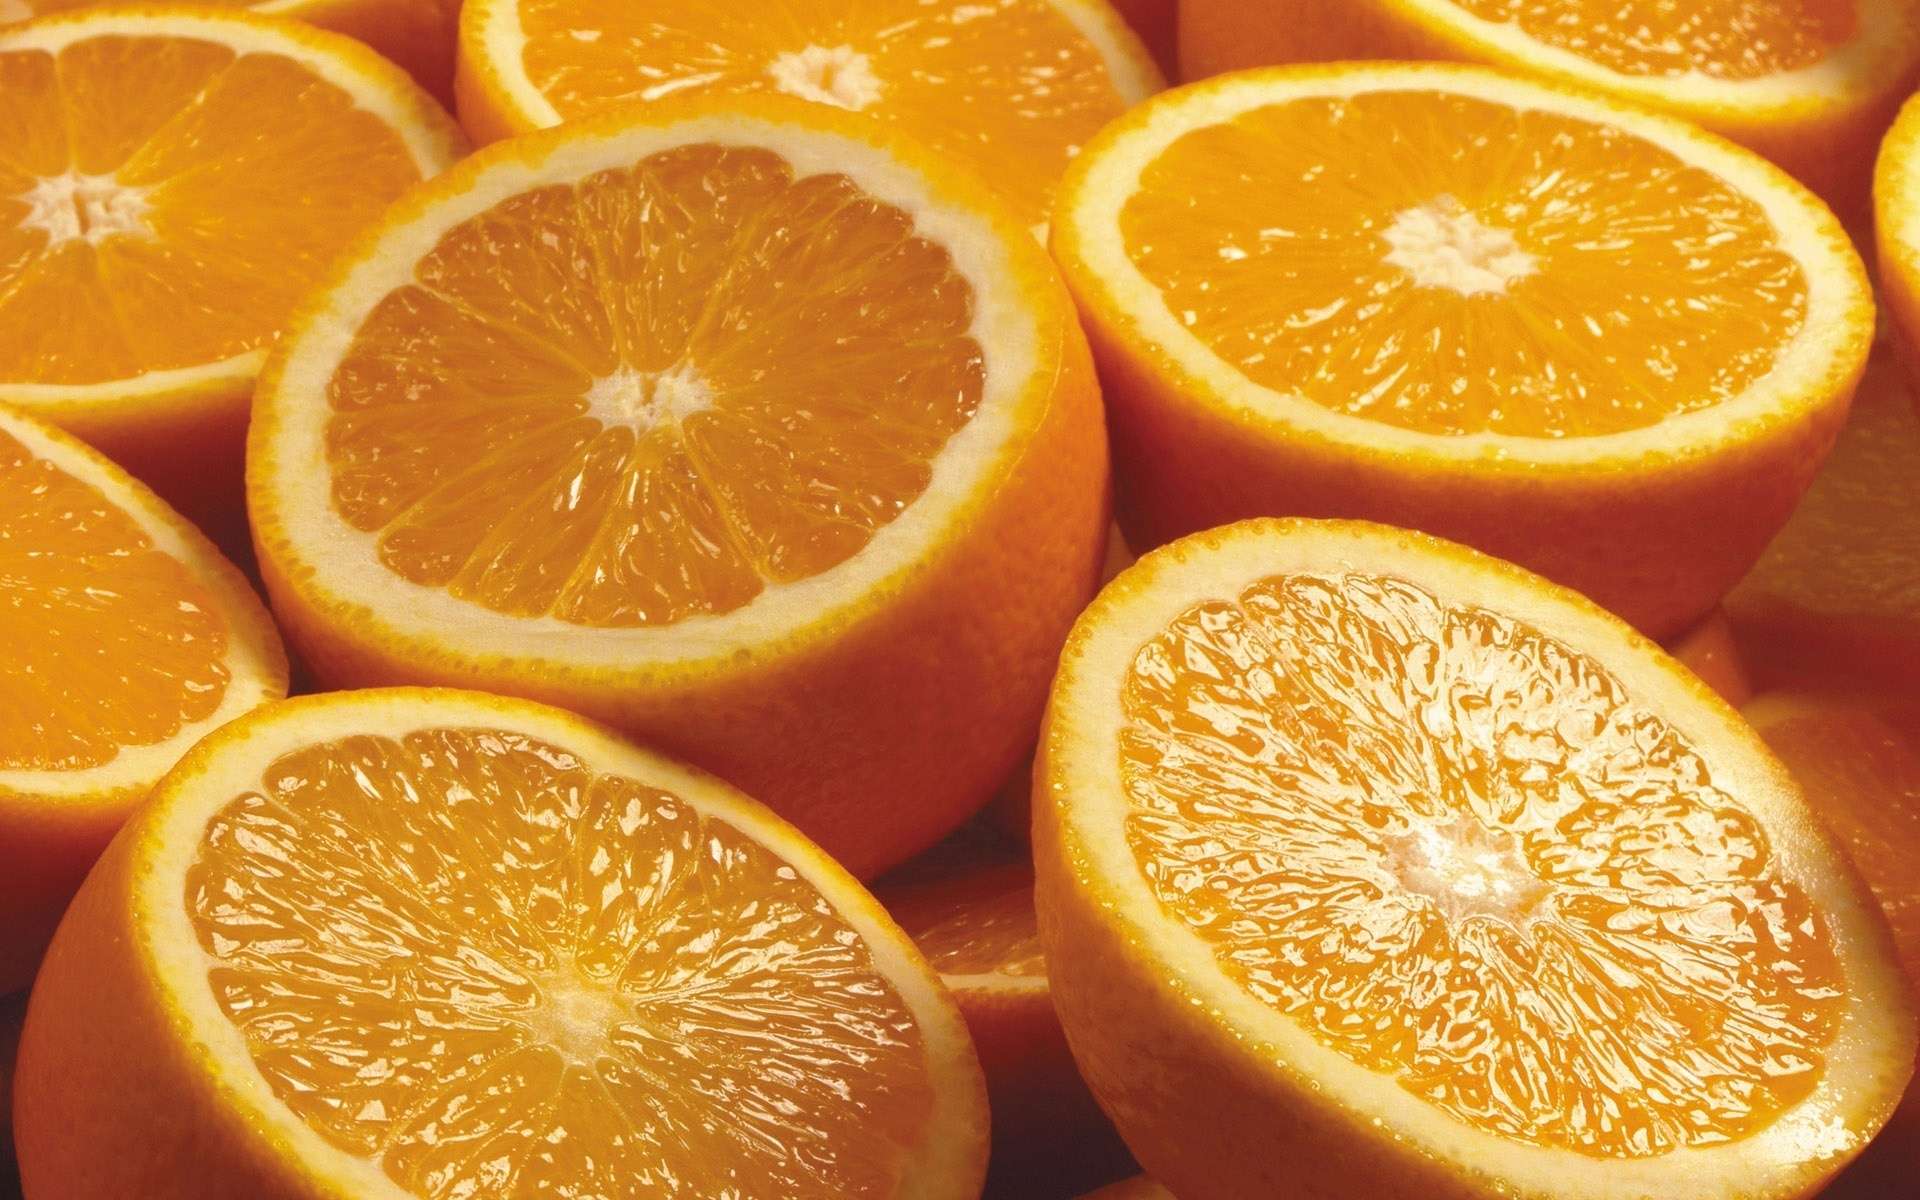 Вкусные апельсины, фото обои фотография картинка 